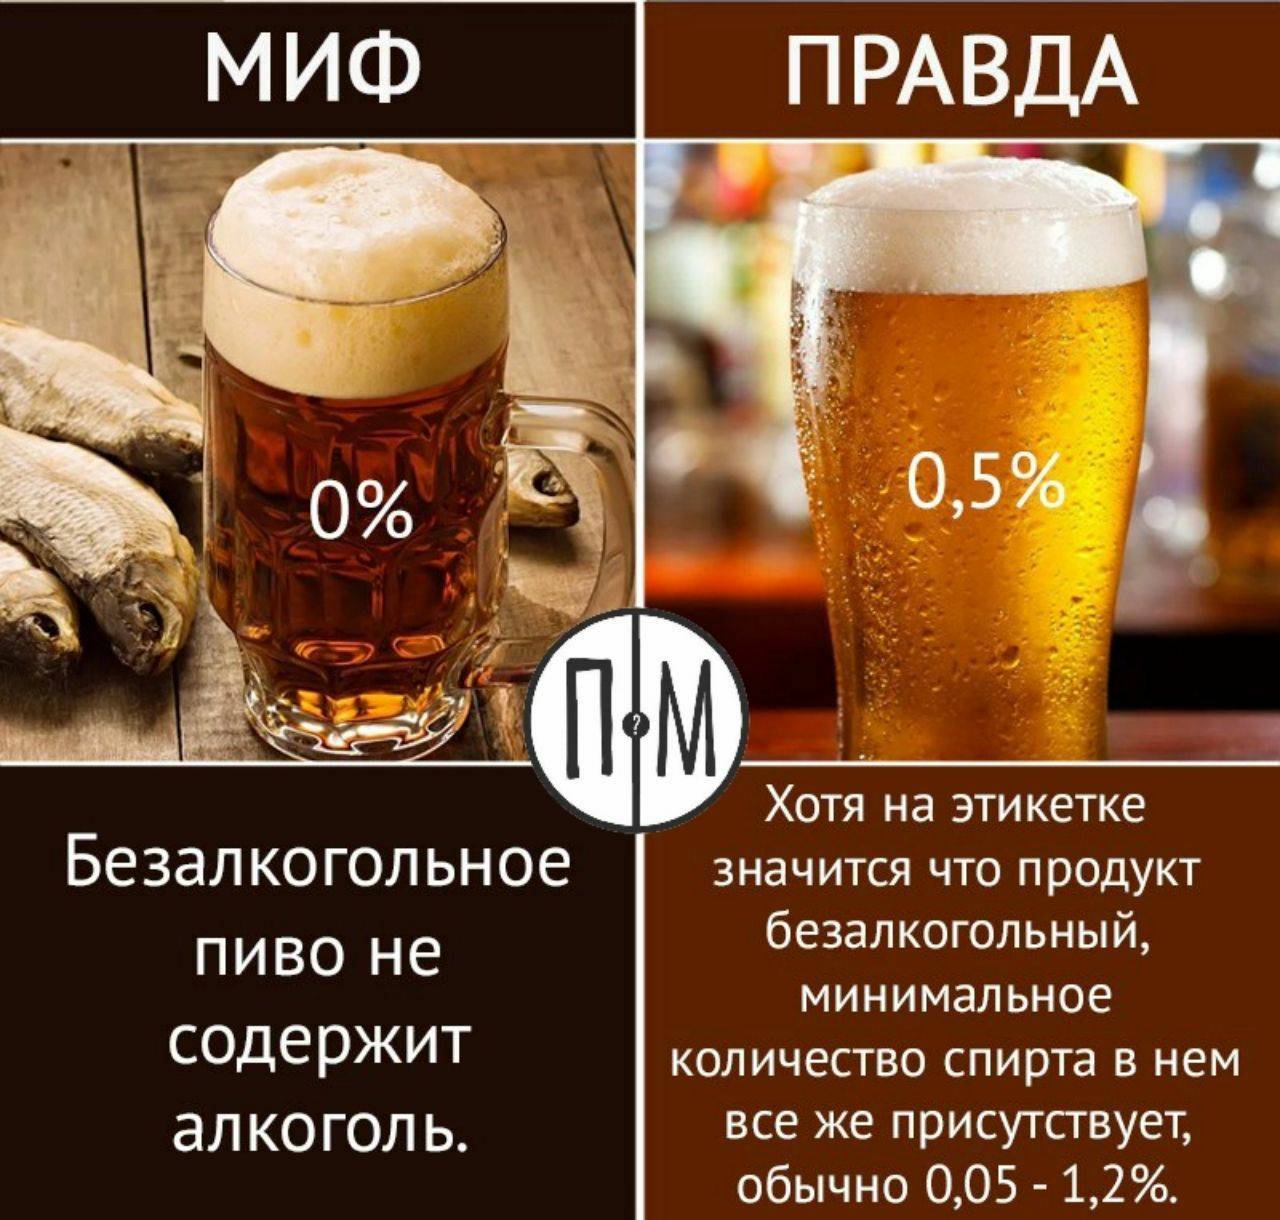 Безалкогольное пиво: польза и вред хмельного продукта